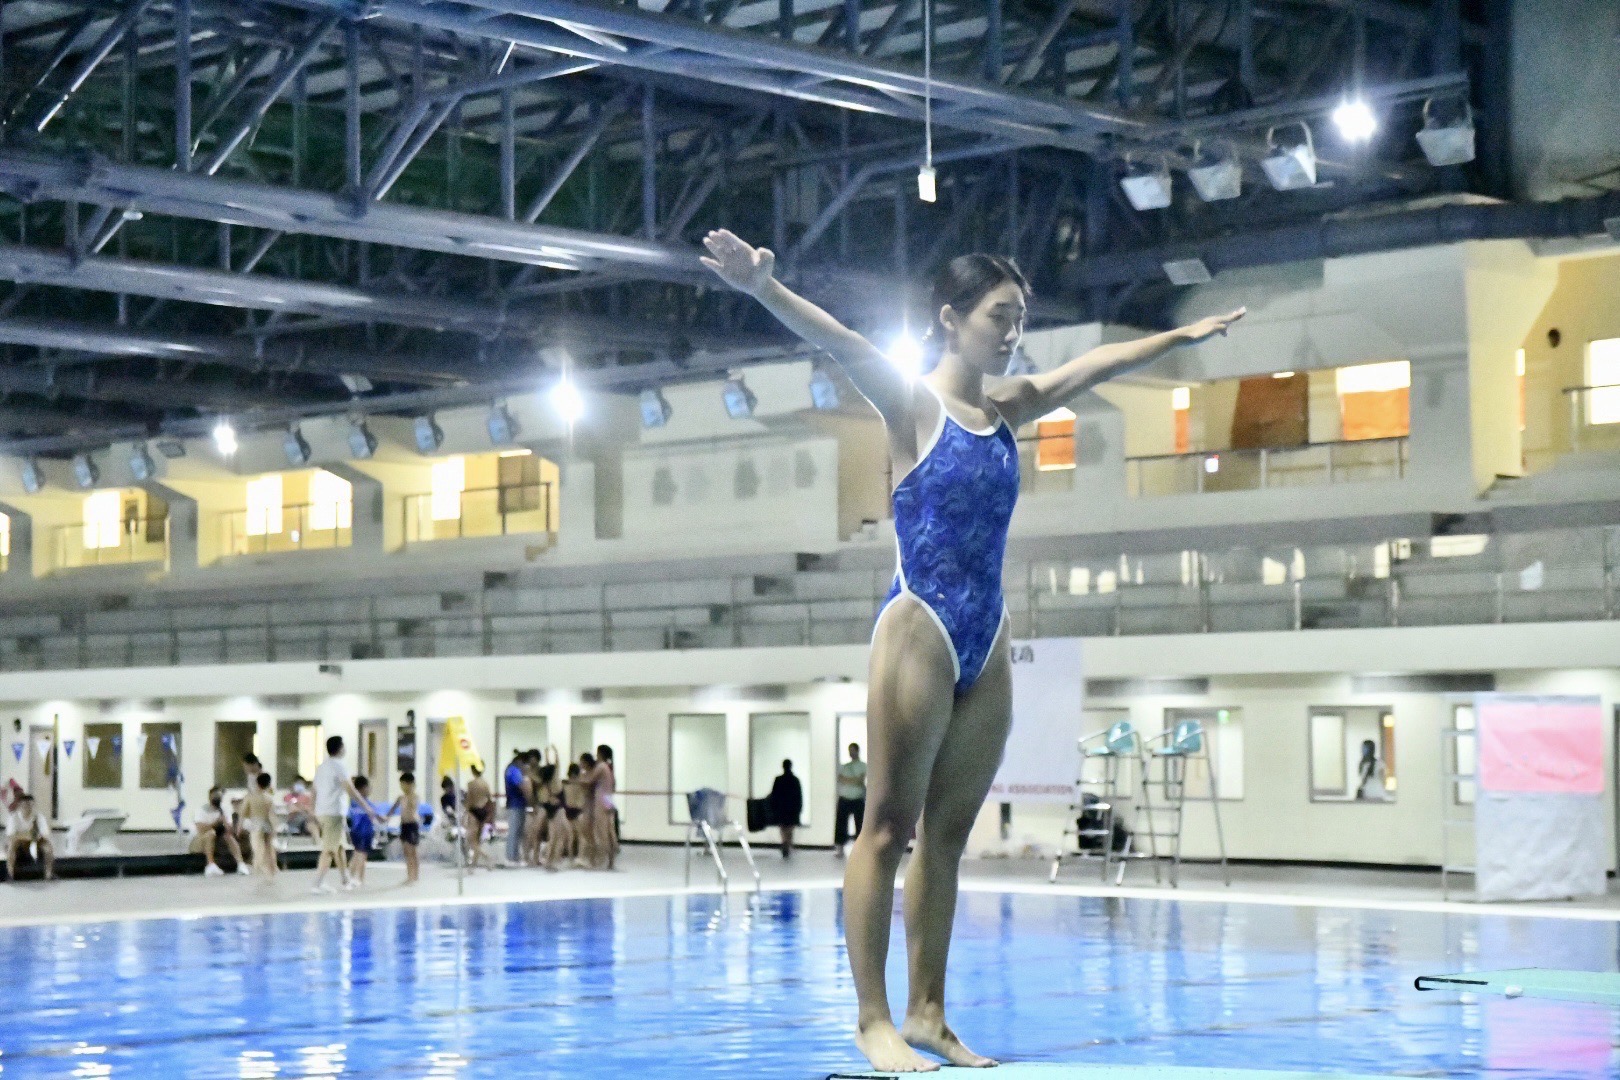 臺中北區國民運動中心擁有全國首創一館三池 符合國際規範的競賽泳池 。台中運動局提供